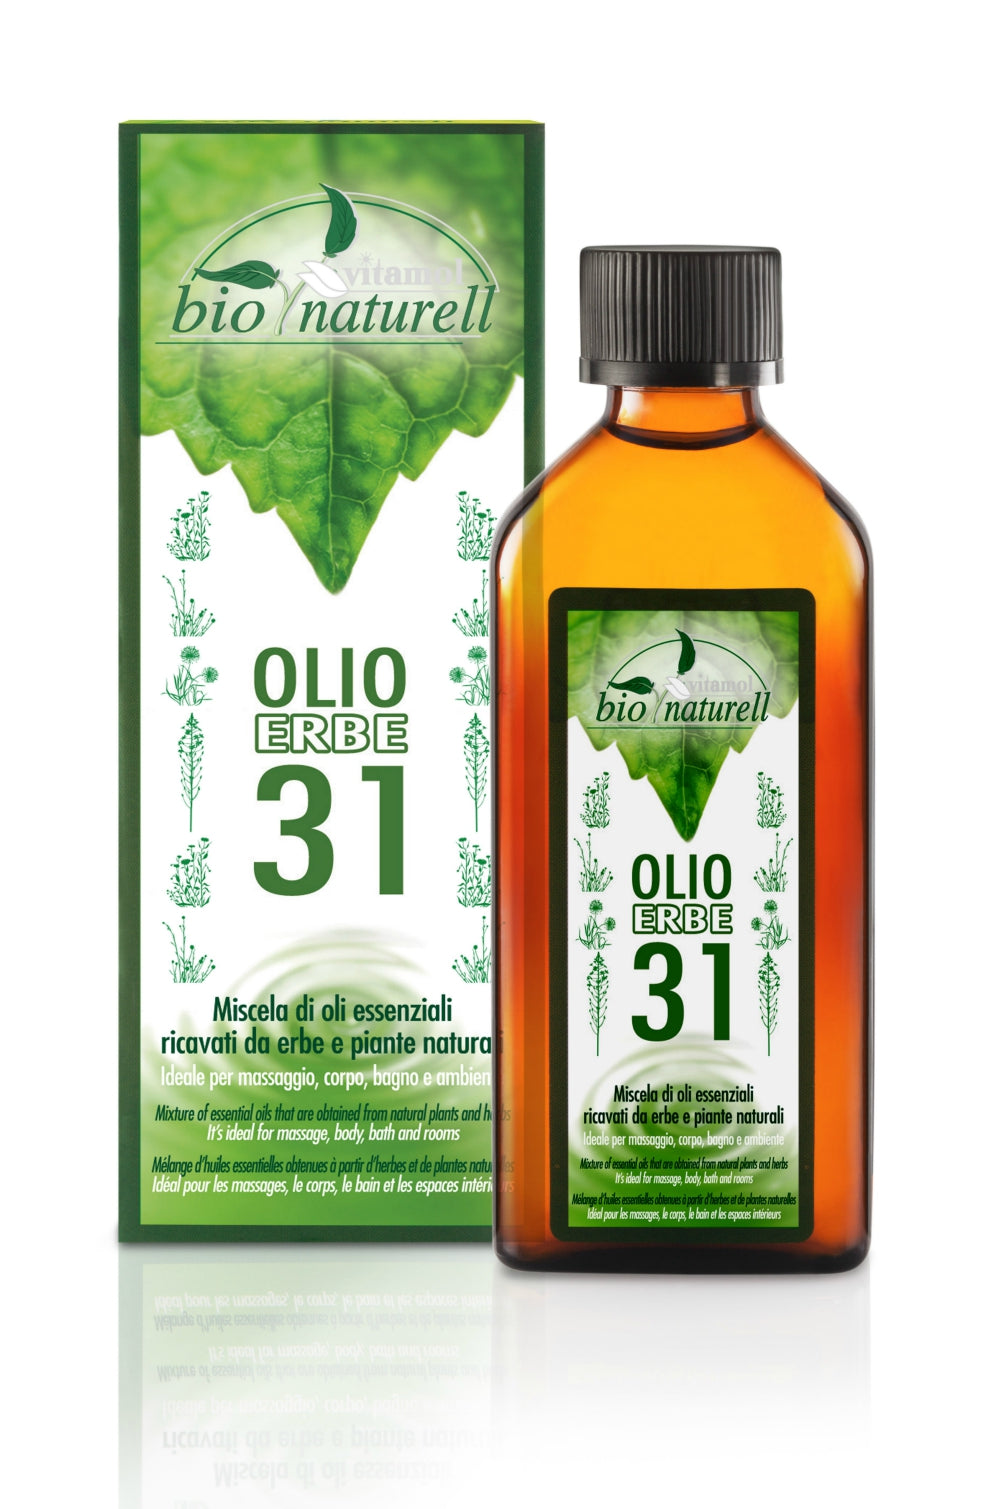 Vitamol Olio 31 Erbe Bio Naturell 100 ml - RossoLaccaStore